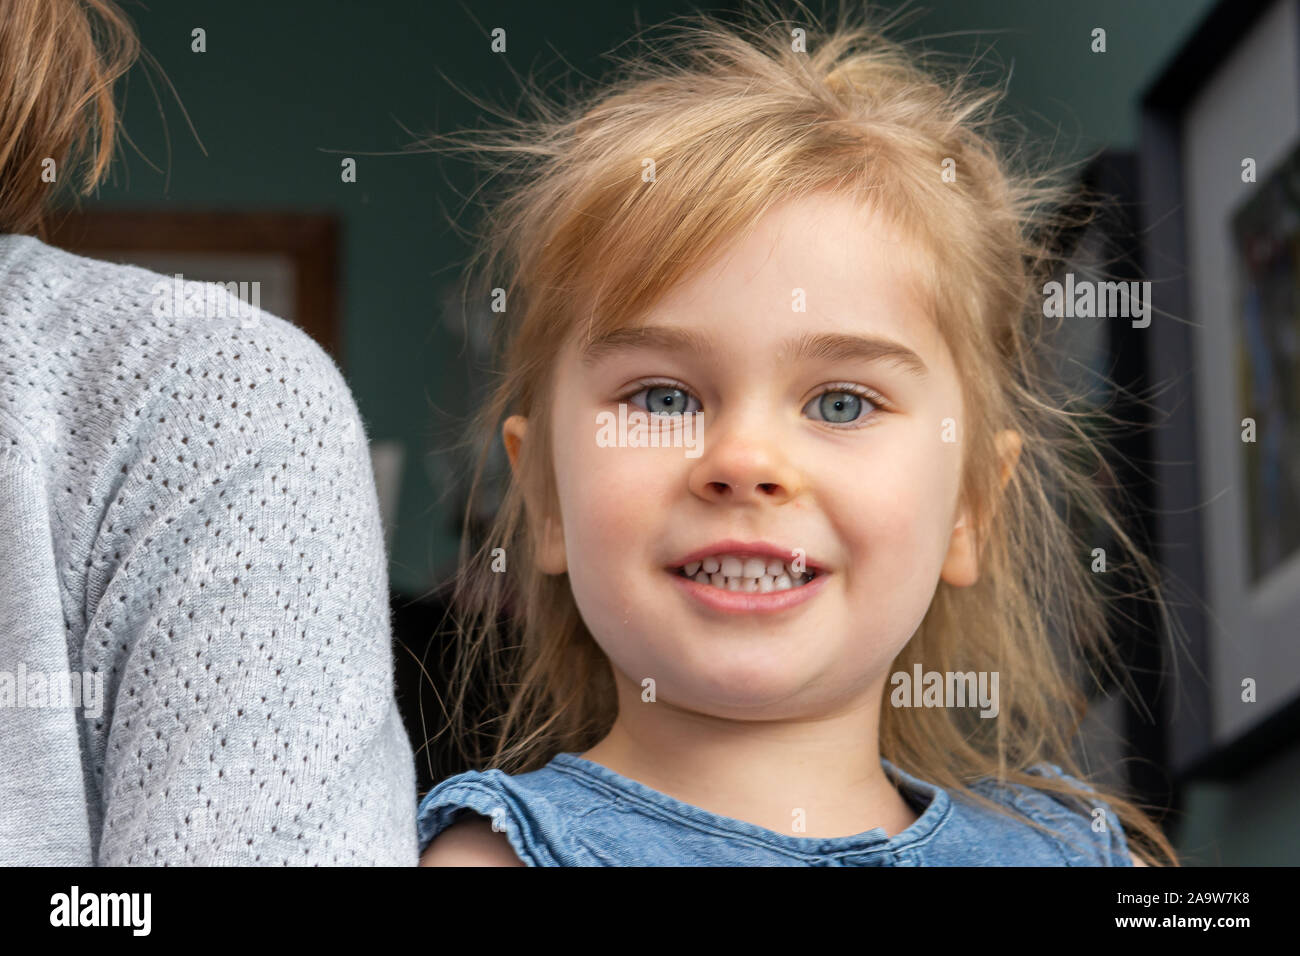 Petite fille aux grands yeux bleus Banque de photographies et dimages à haute résolution Alamy